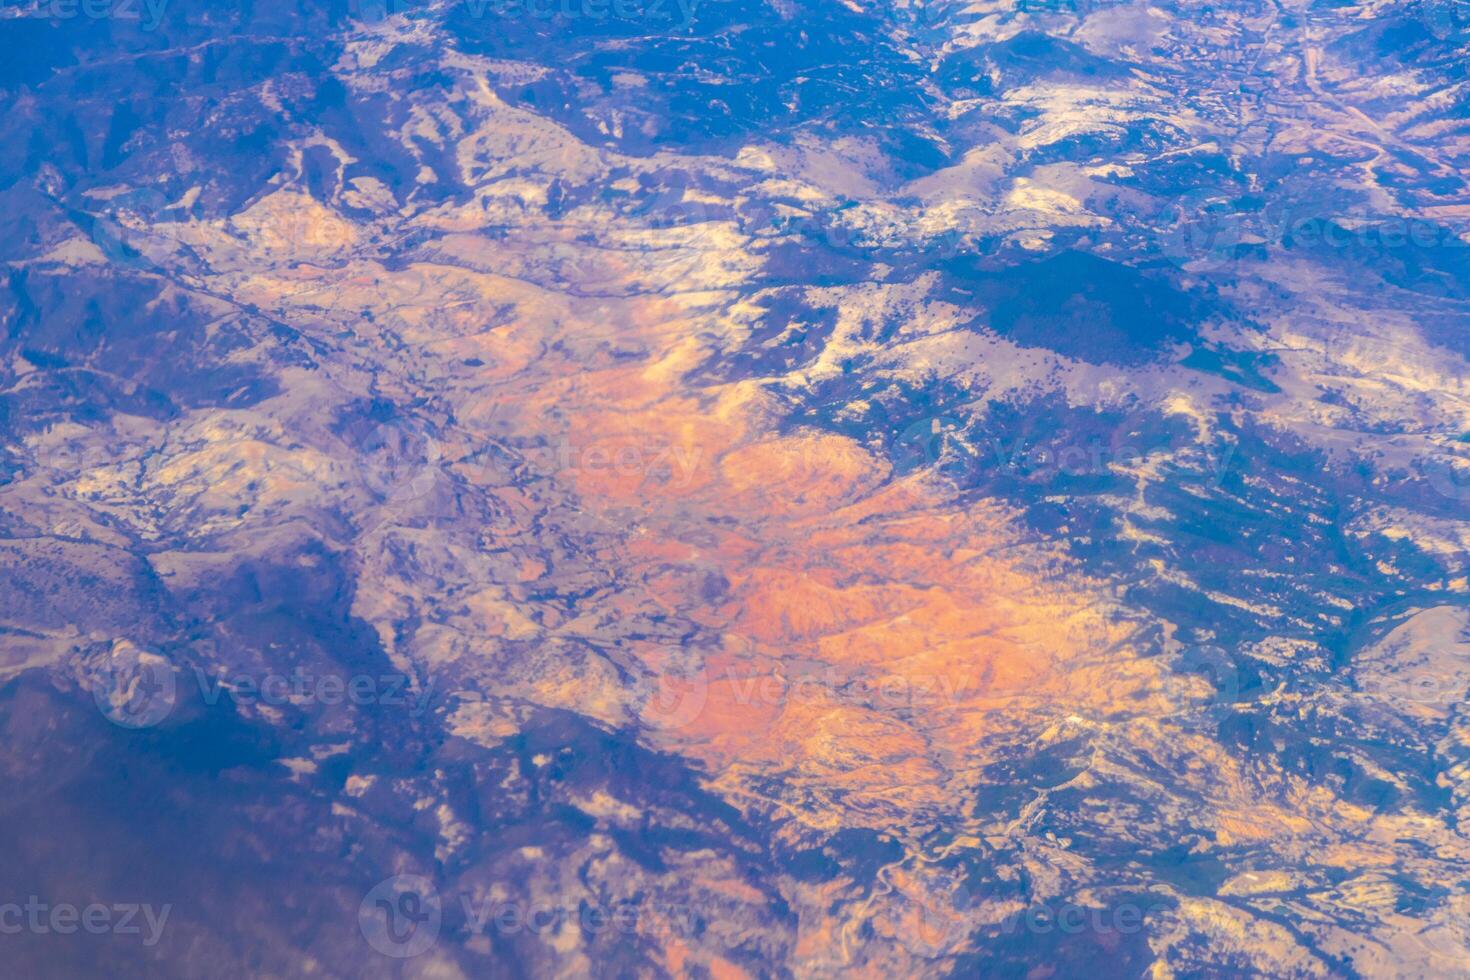 vôo avião sobre México nuvens céu vulcões montanhas cidade deserto. foto